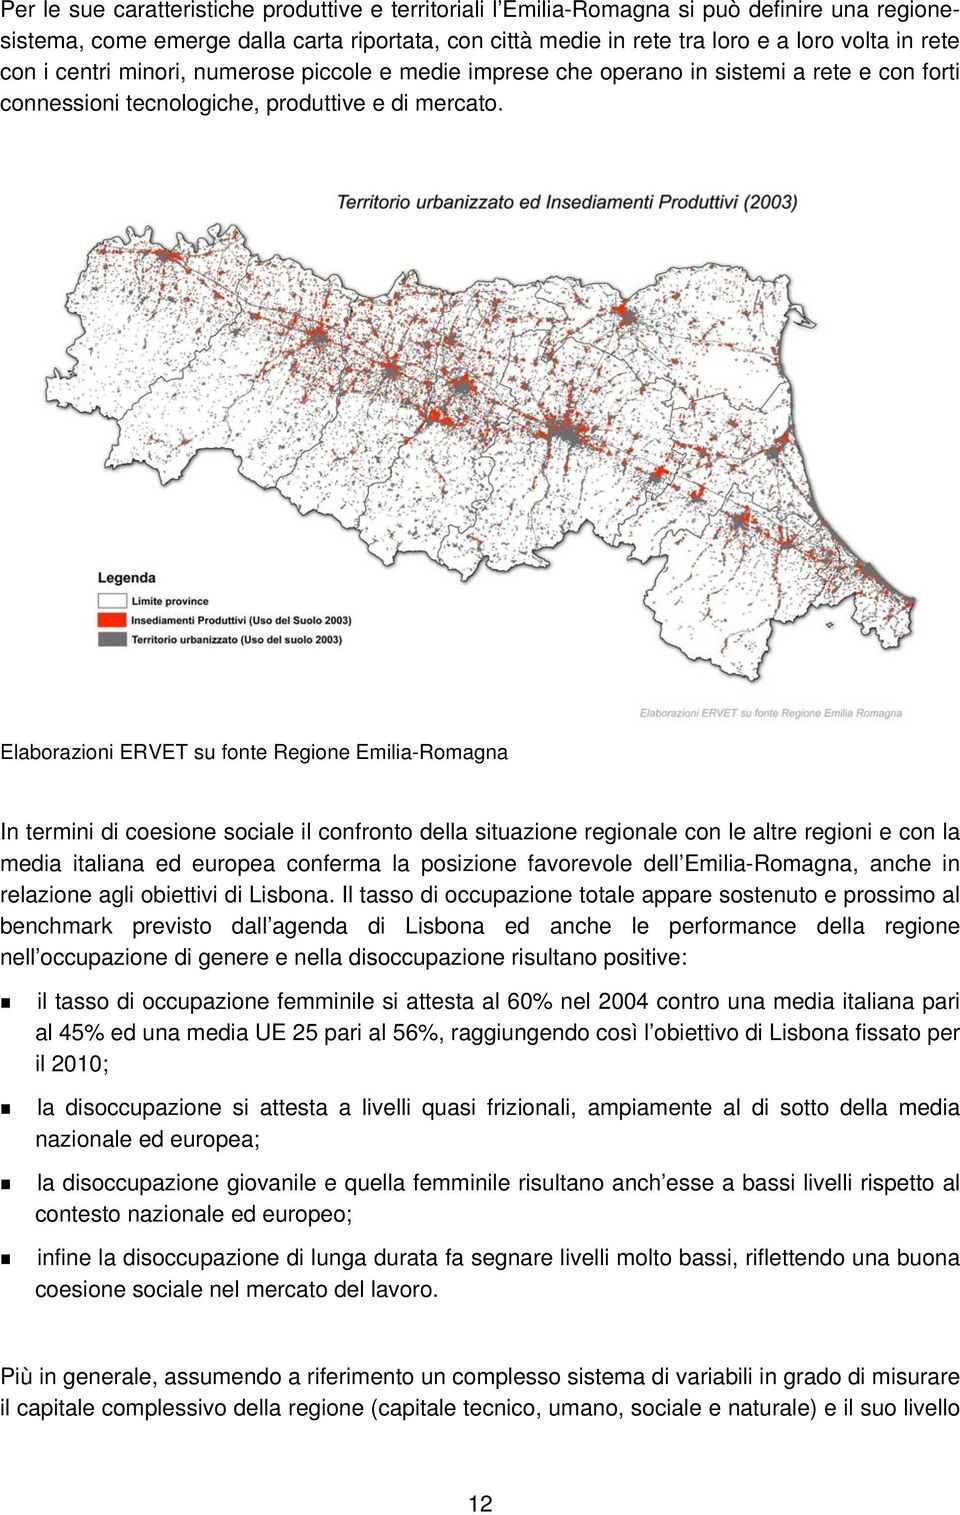 Elaborazioni ERVET su fonte Regione Emilia-Romagna In termini di coesione sociale il confronto della situazione regionale con le altre regioni e con la media italiana ed europea conferma la posizione